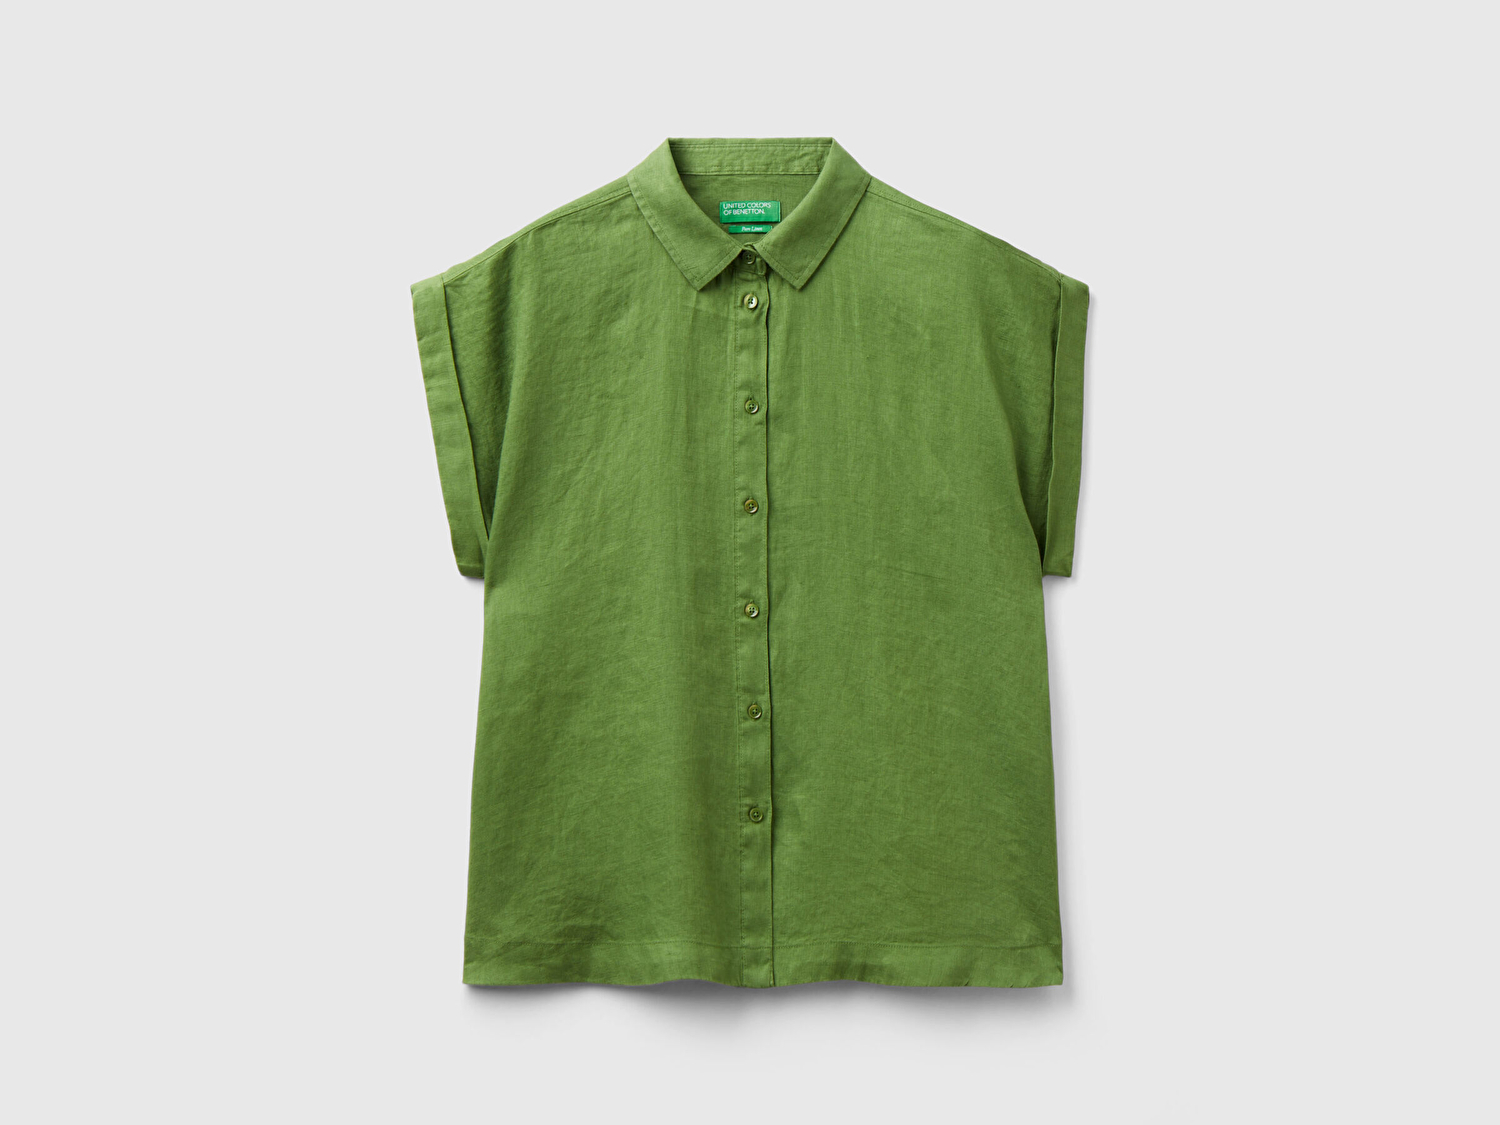 Benetton Kadın Soluk Yeşil %100 Keten Omuz Detaylı Kısa Kollu Gömlek